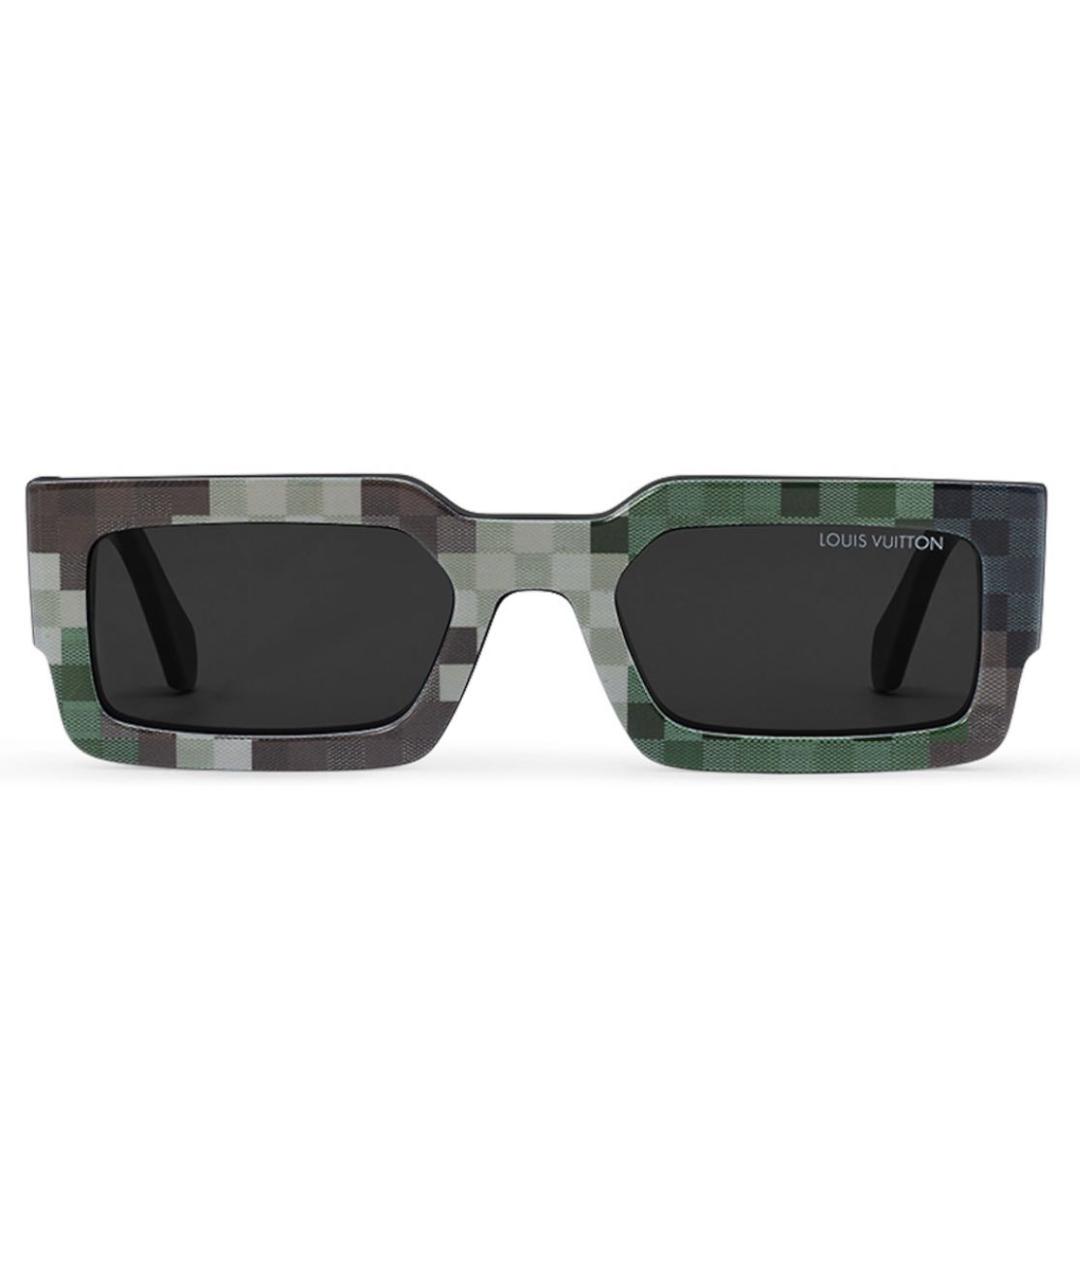 LOUIS VUITTON PRE-OWNED Зеленые солнцезащитные очки, фото 2